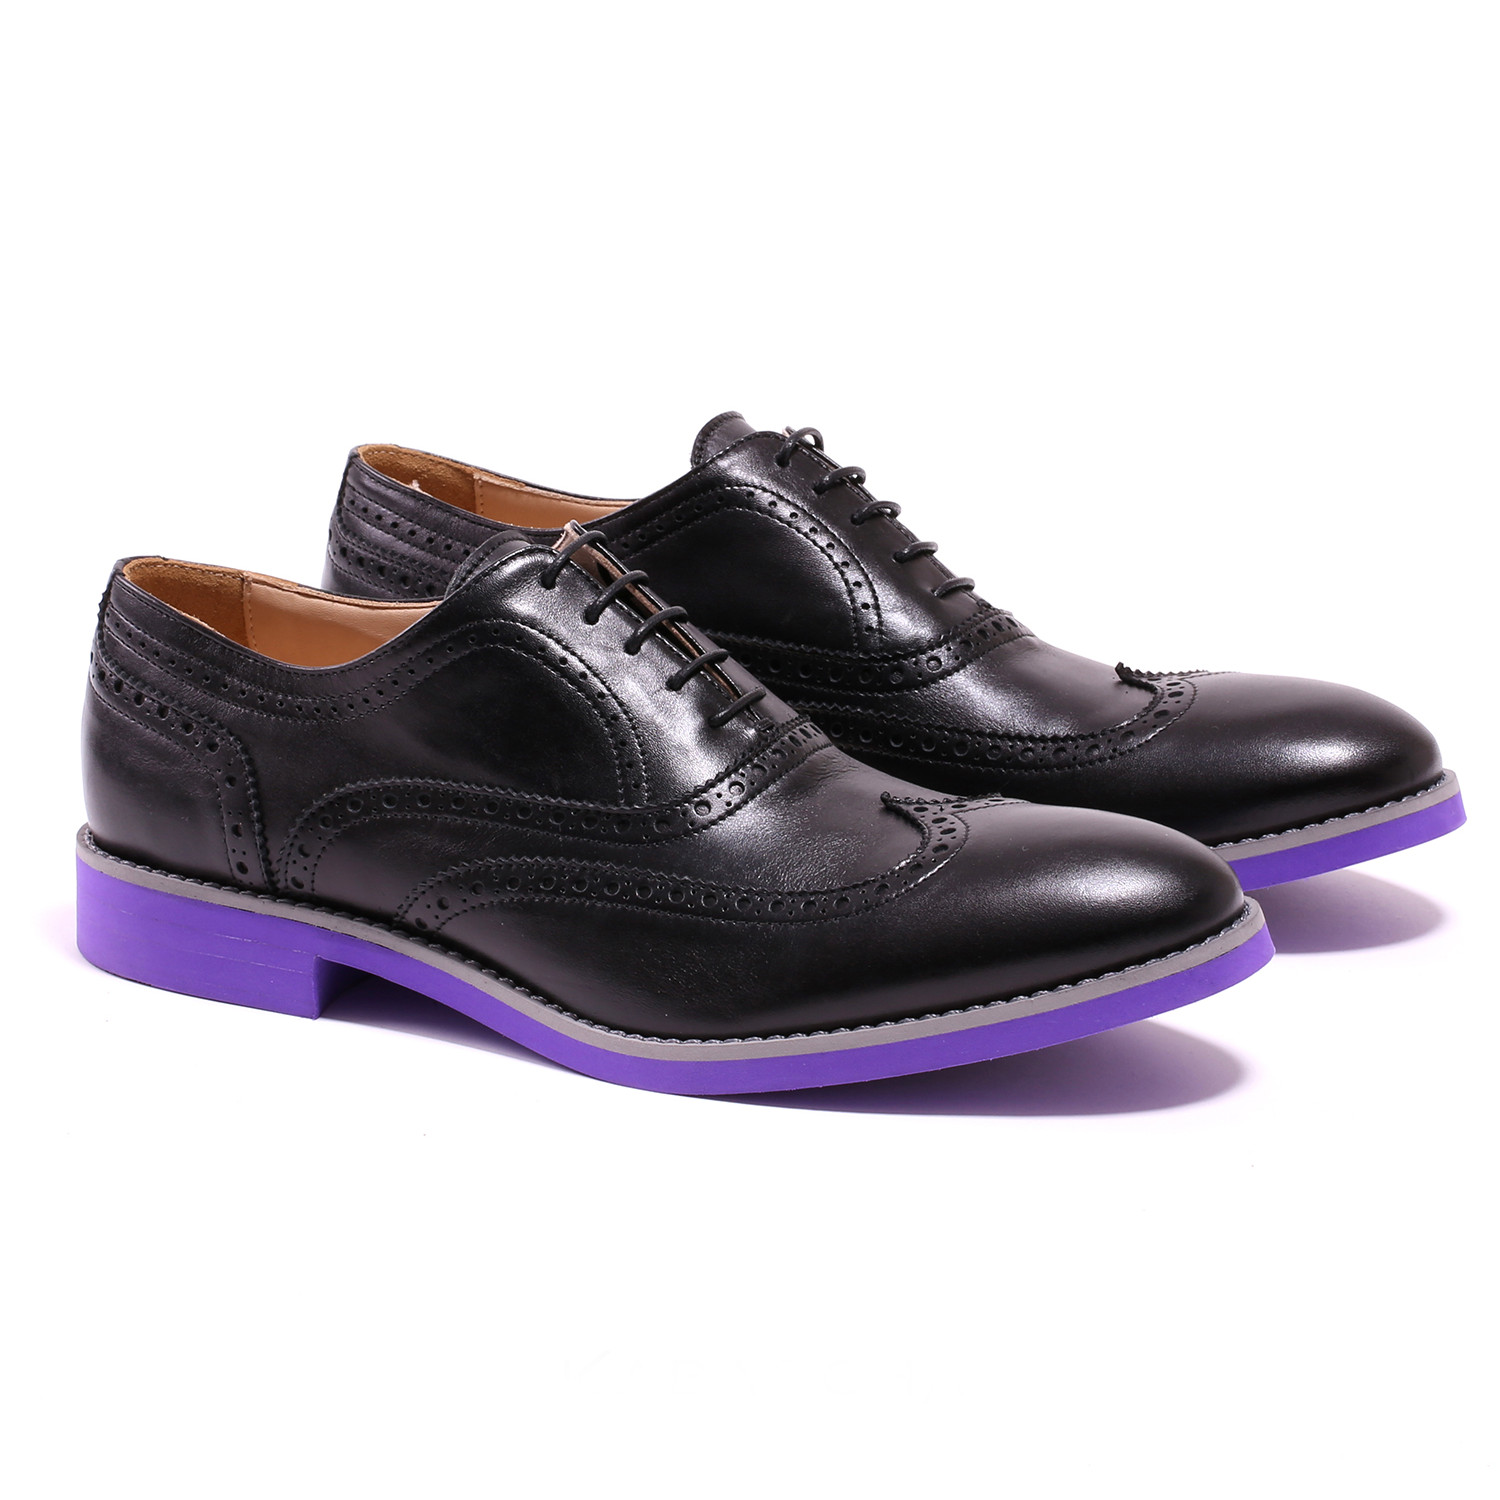 purple wingtip shoes